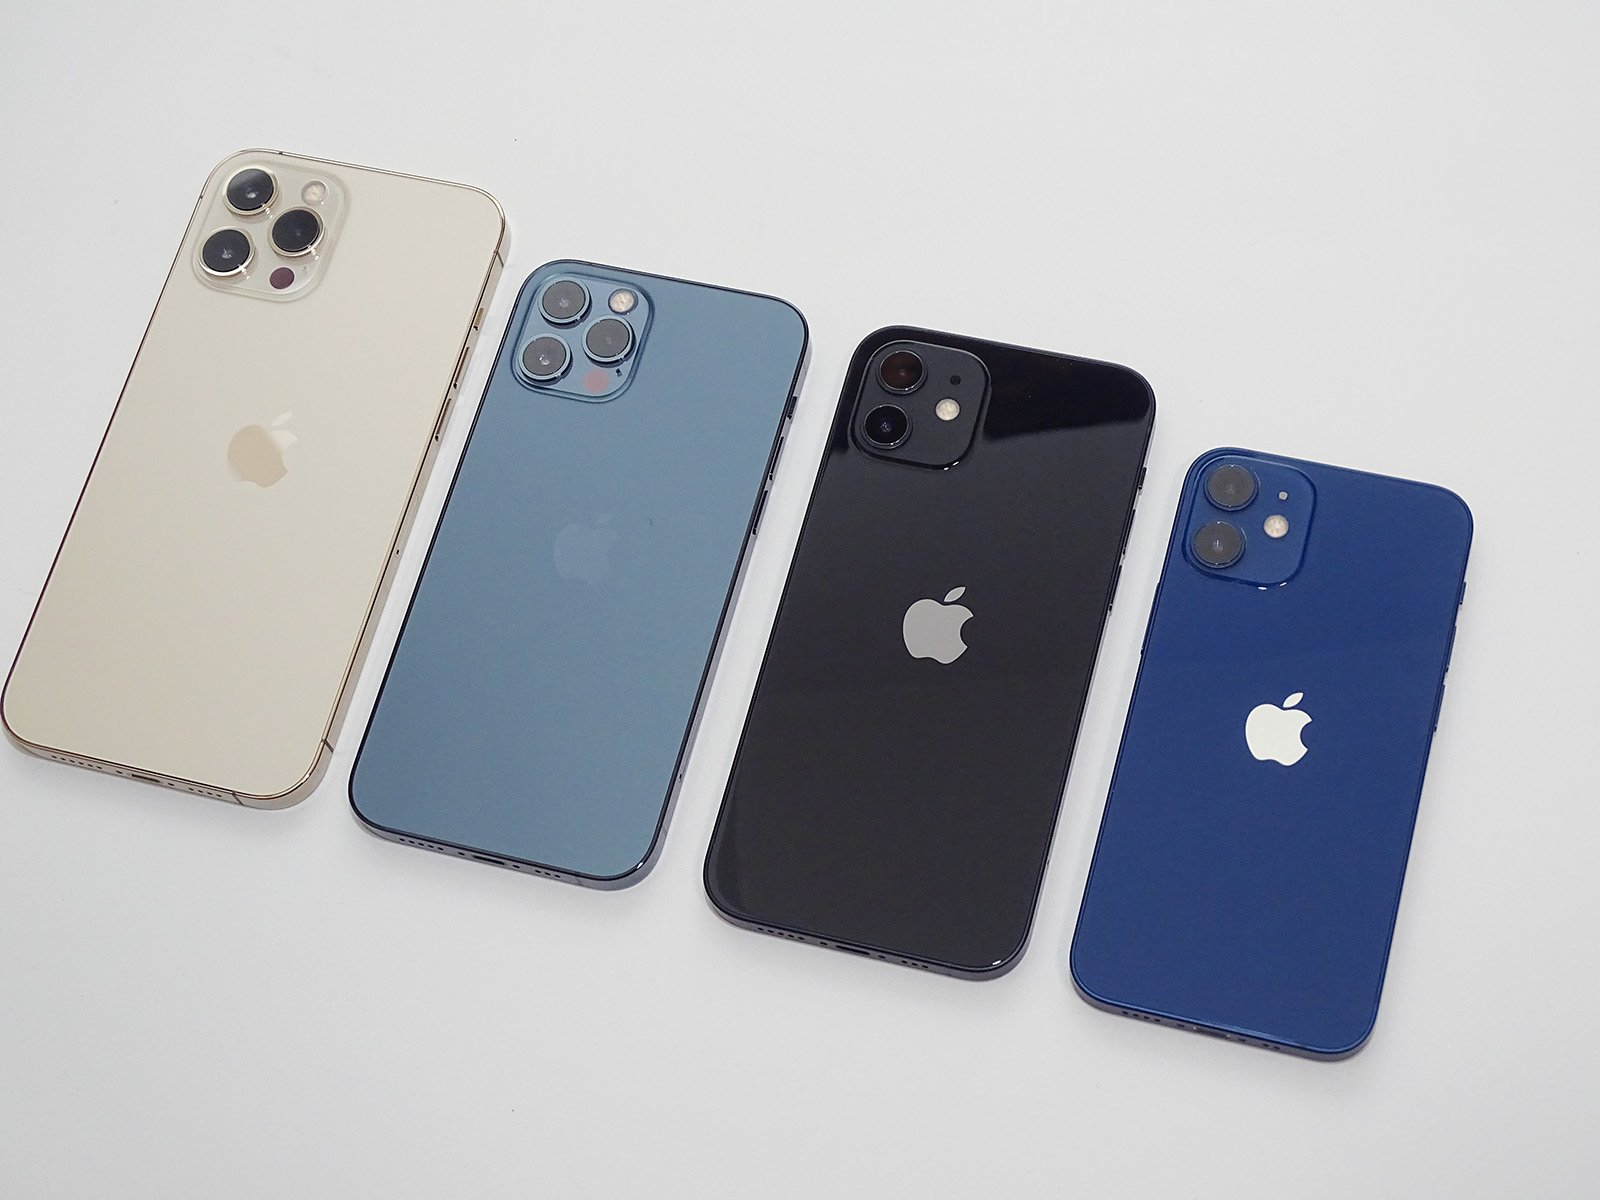 アップルが2020年秋に発売する5G対応のiPhone 12シリーズ。左からiPhone 12 Pro Max、iPhone 12 Pro、iPhone 12、iPhone 12 mini